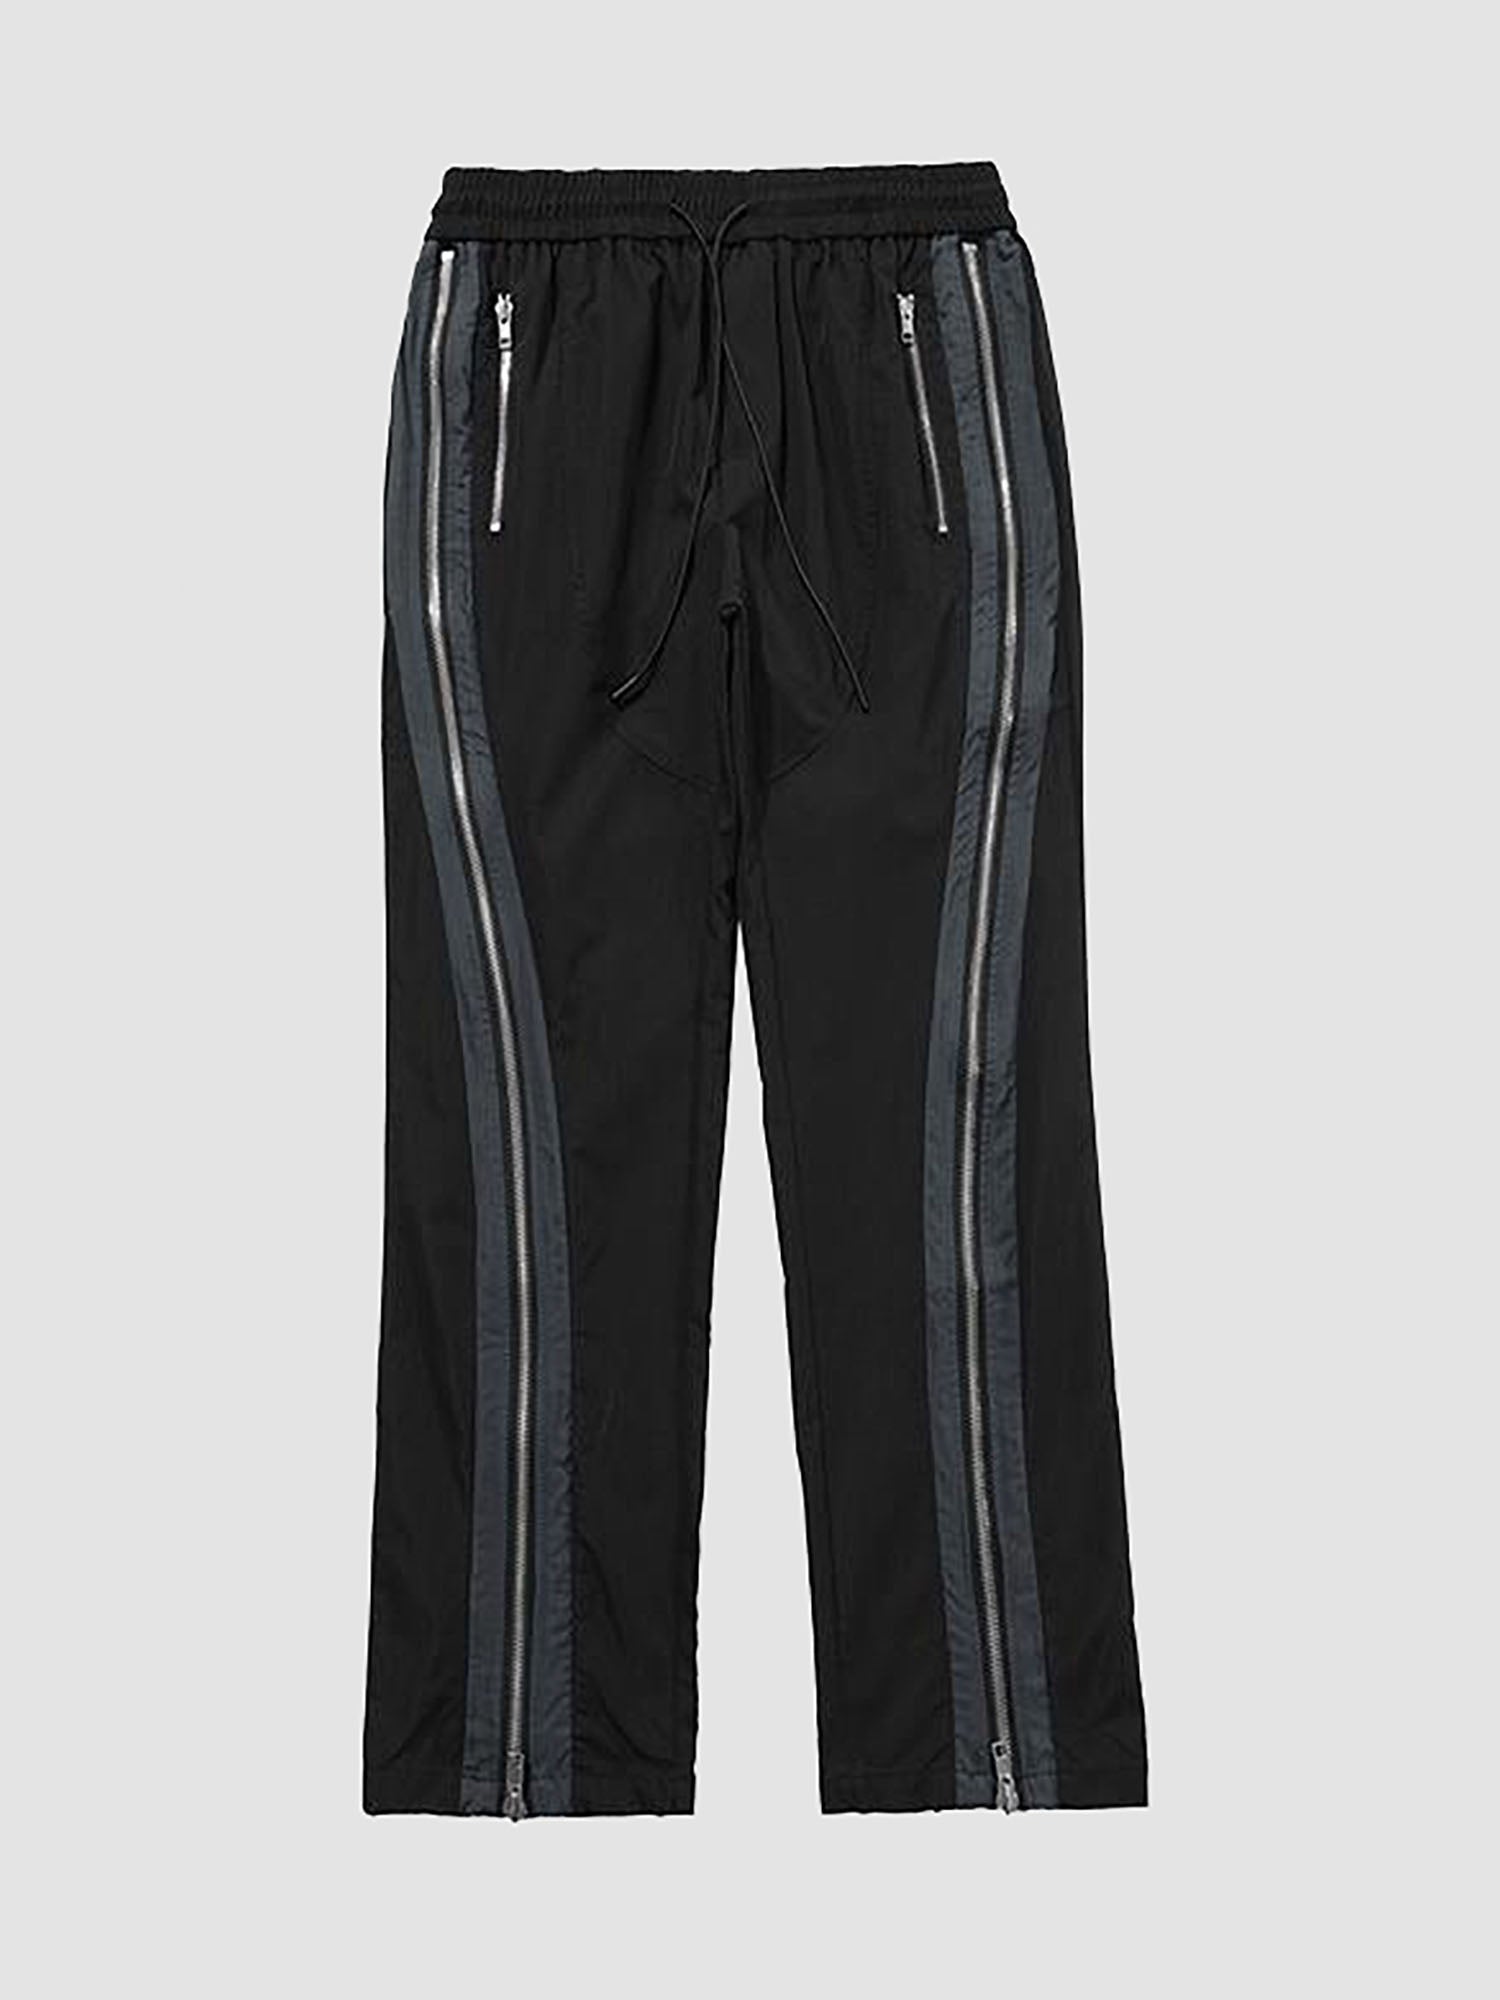 JUSTNOTAG Pantalon de survêtement micro évasé avec fermetures à glissière latérales Streetwear Loose Casual Cordon de serrage à la taille Joggers